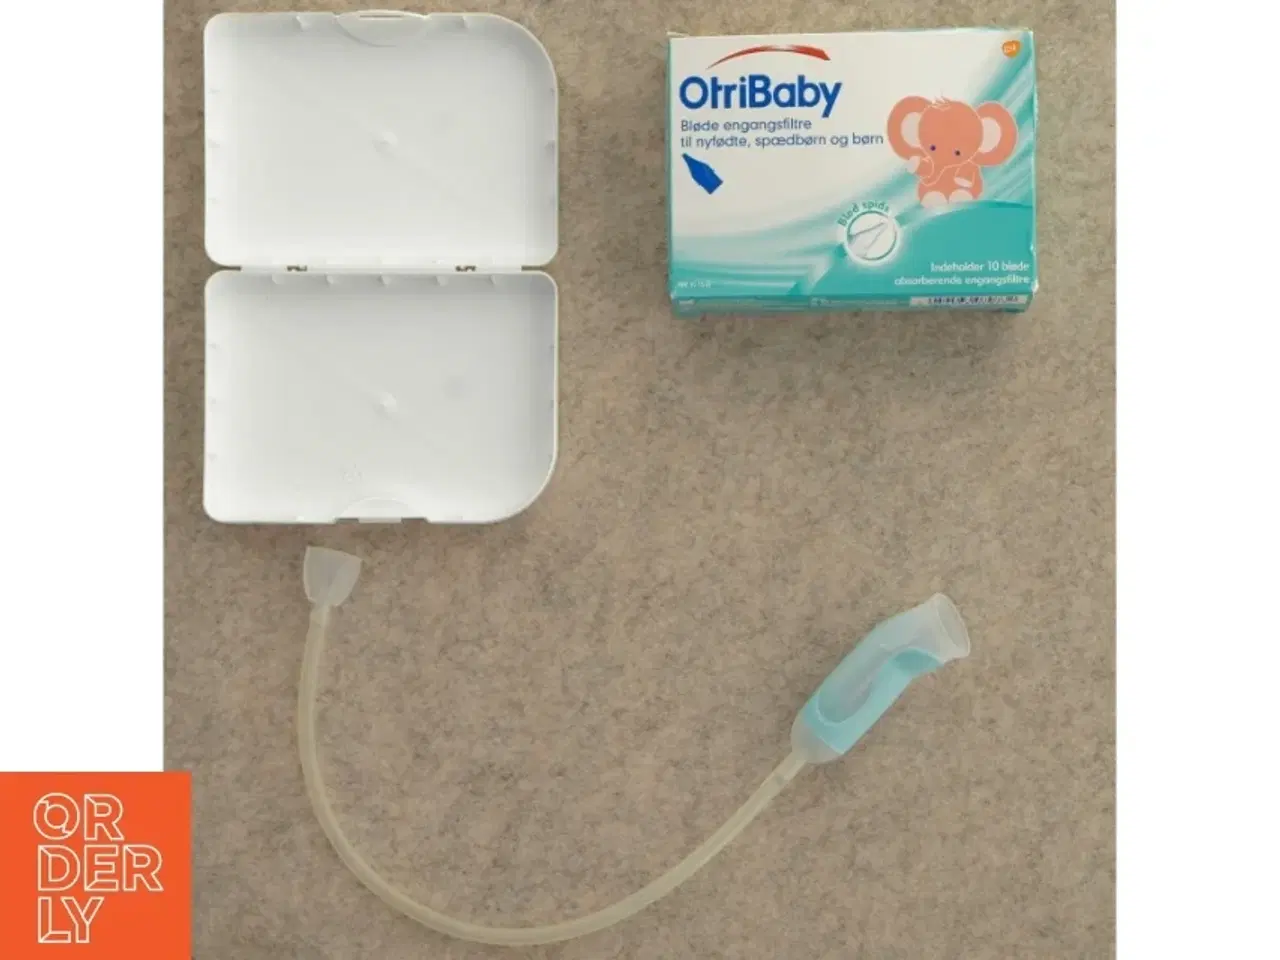 Billede 1 - Næse renser til baby fra Otribaby (str. 12 x 9 x 8 cm) samt engangsfiltre